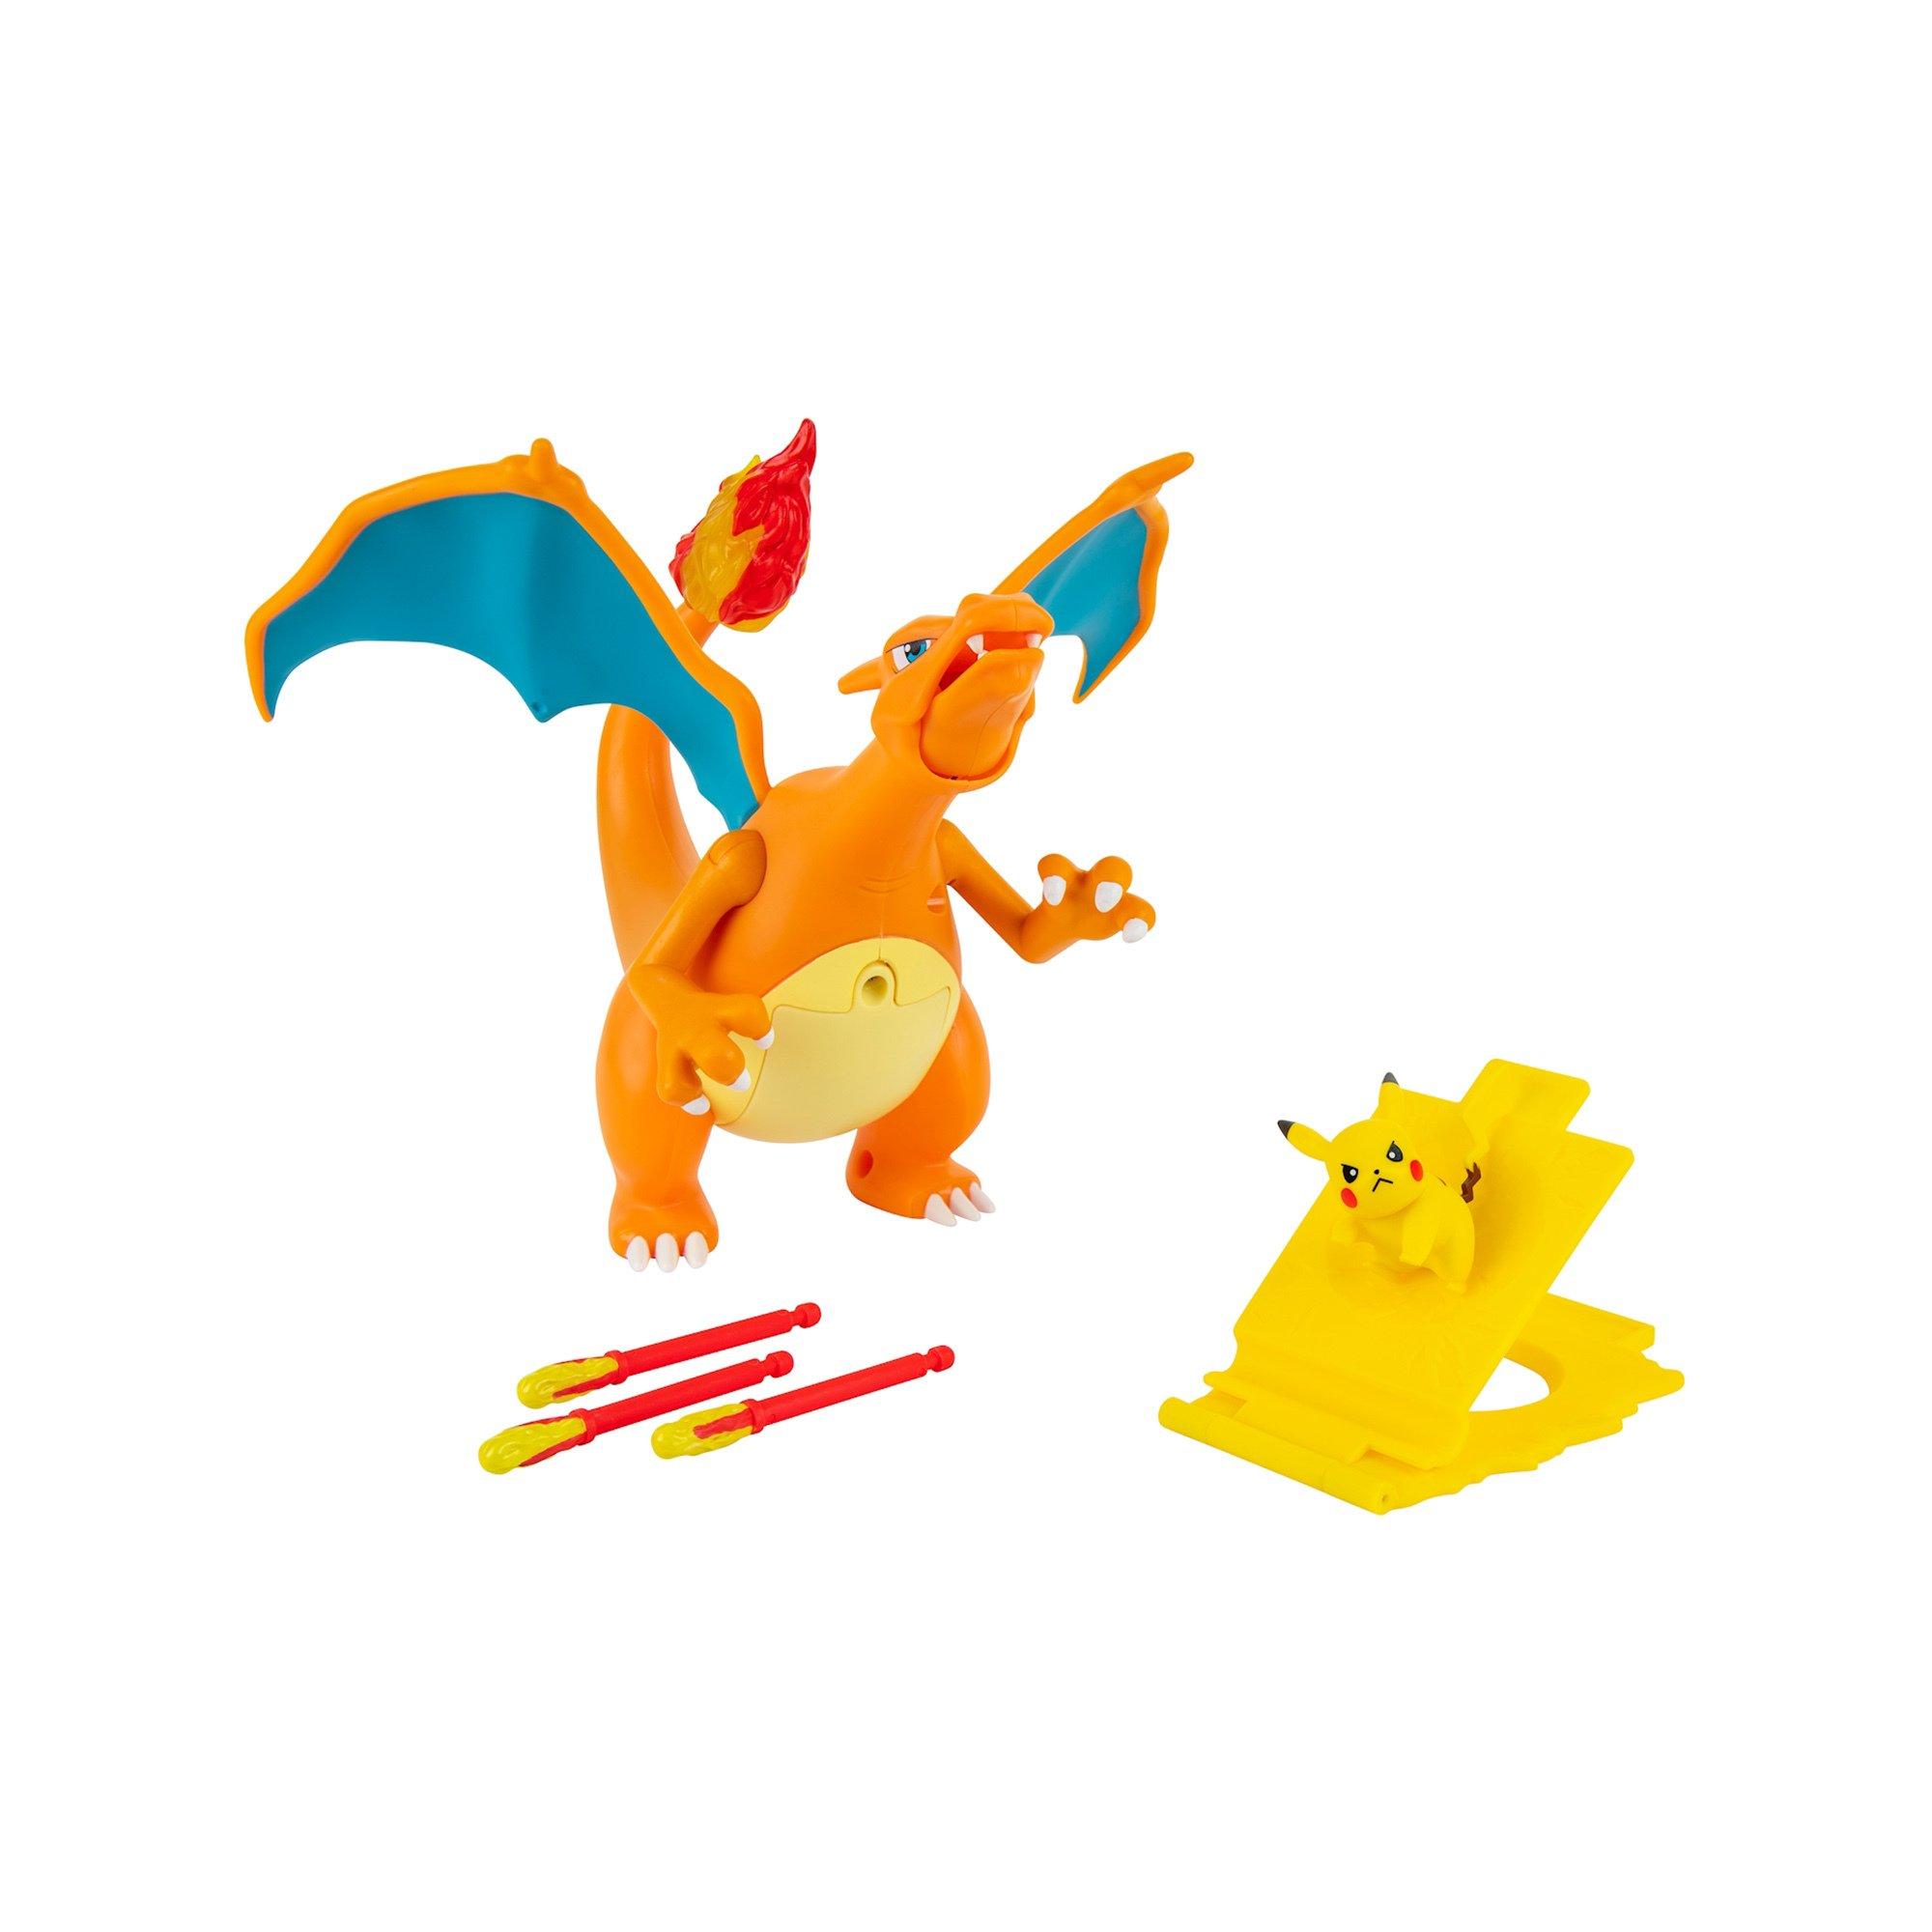 Dracaufeu - LOZ iBlock Fun Pokémon 9143